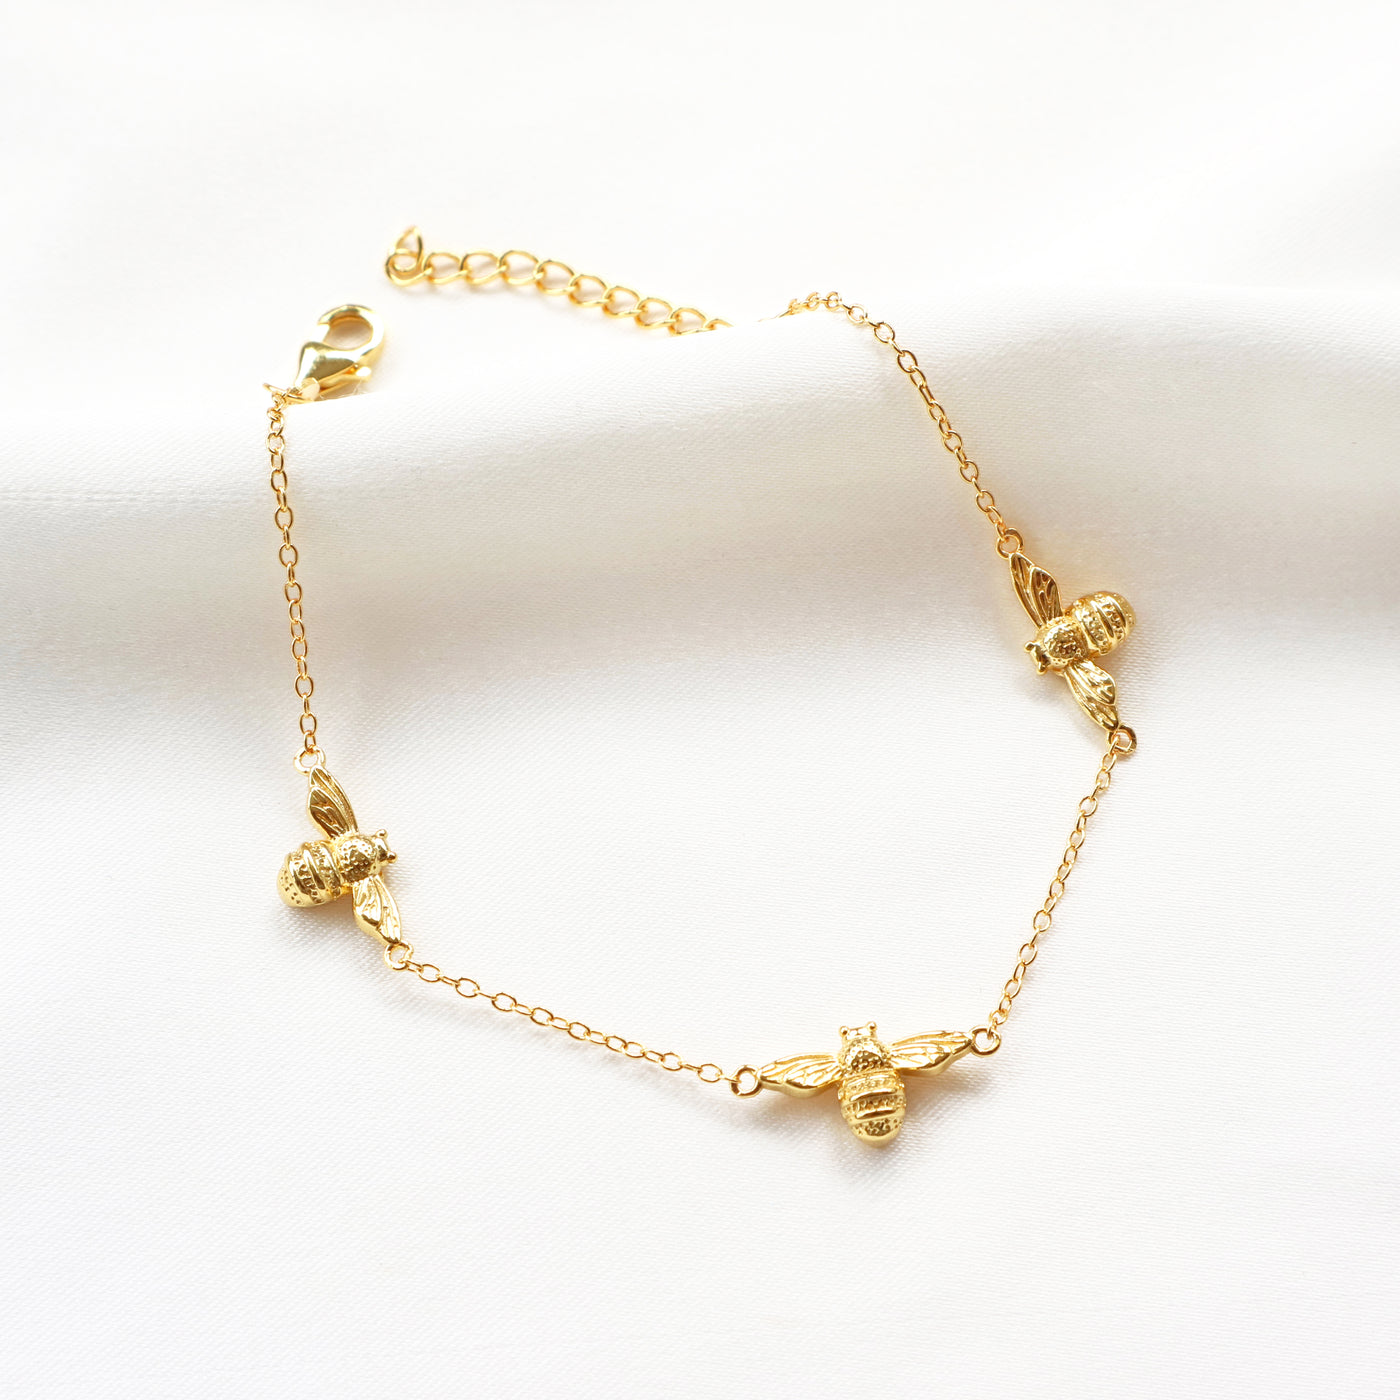 Queen Bumblebee Bracelet (Gold)